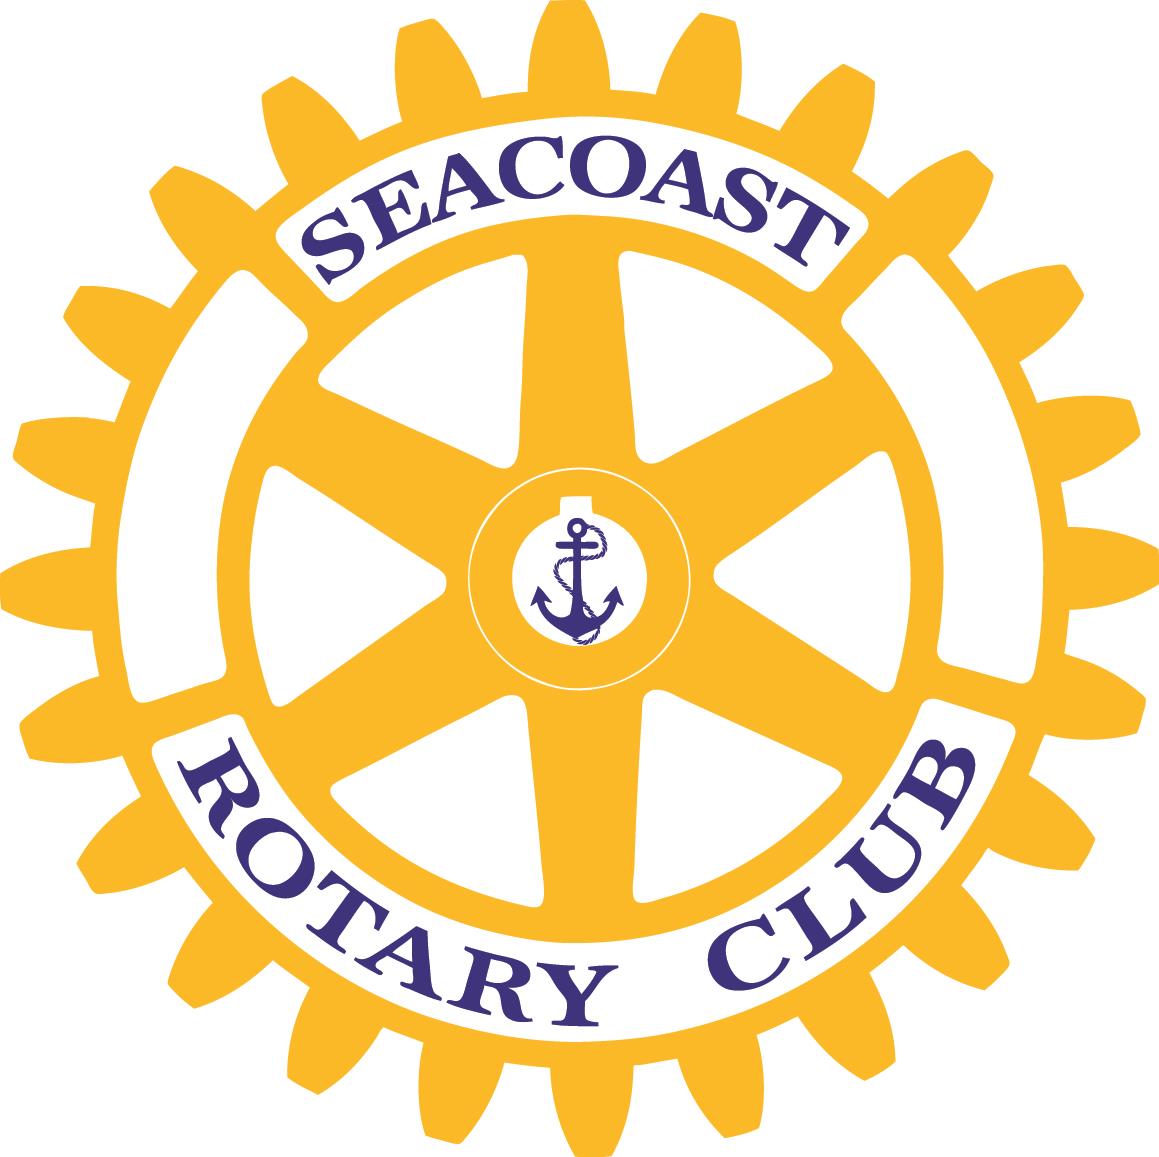 Kutztown Rotary Club